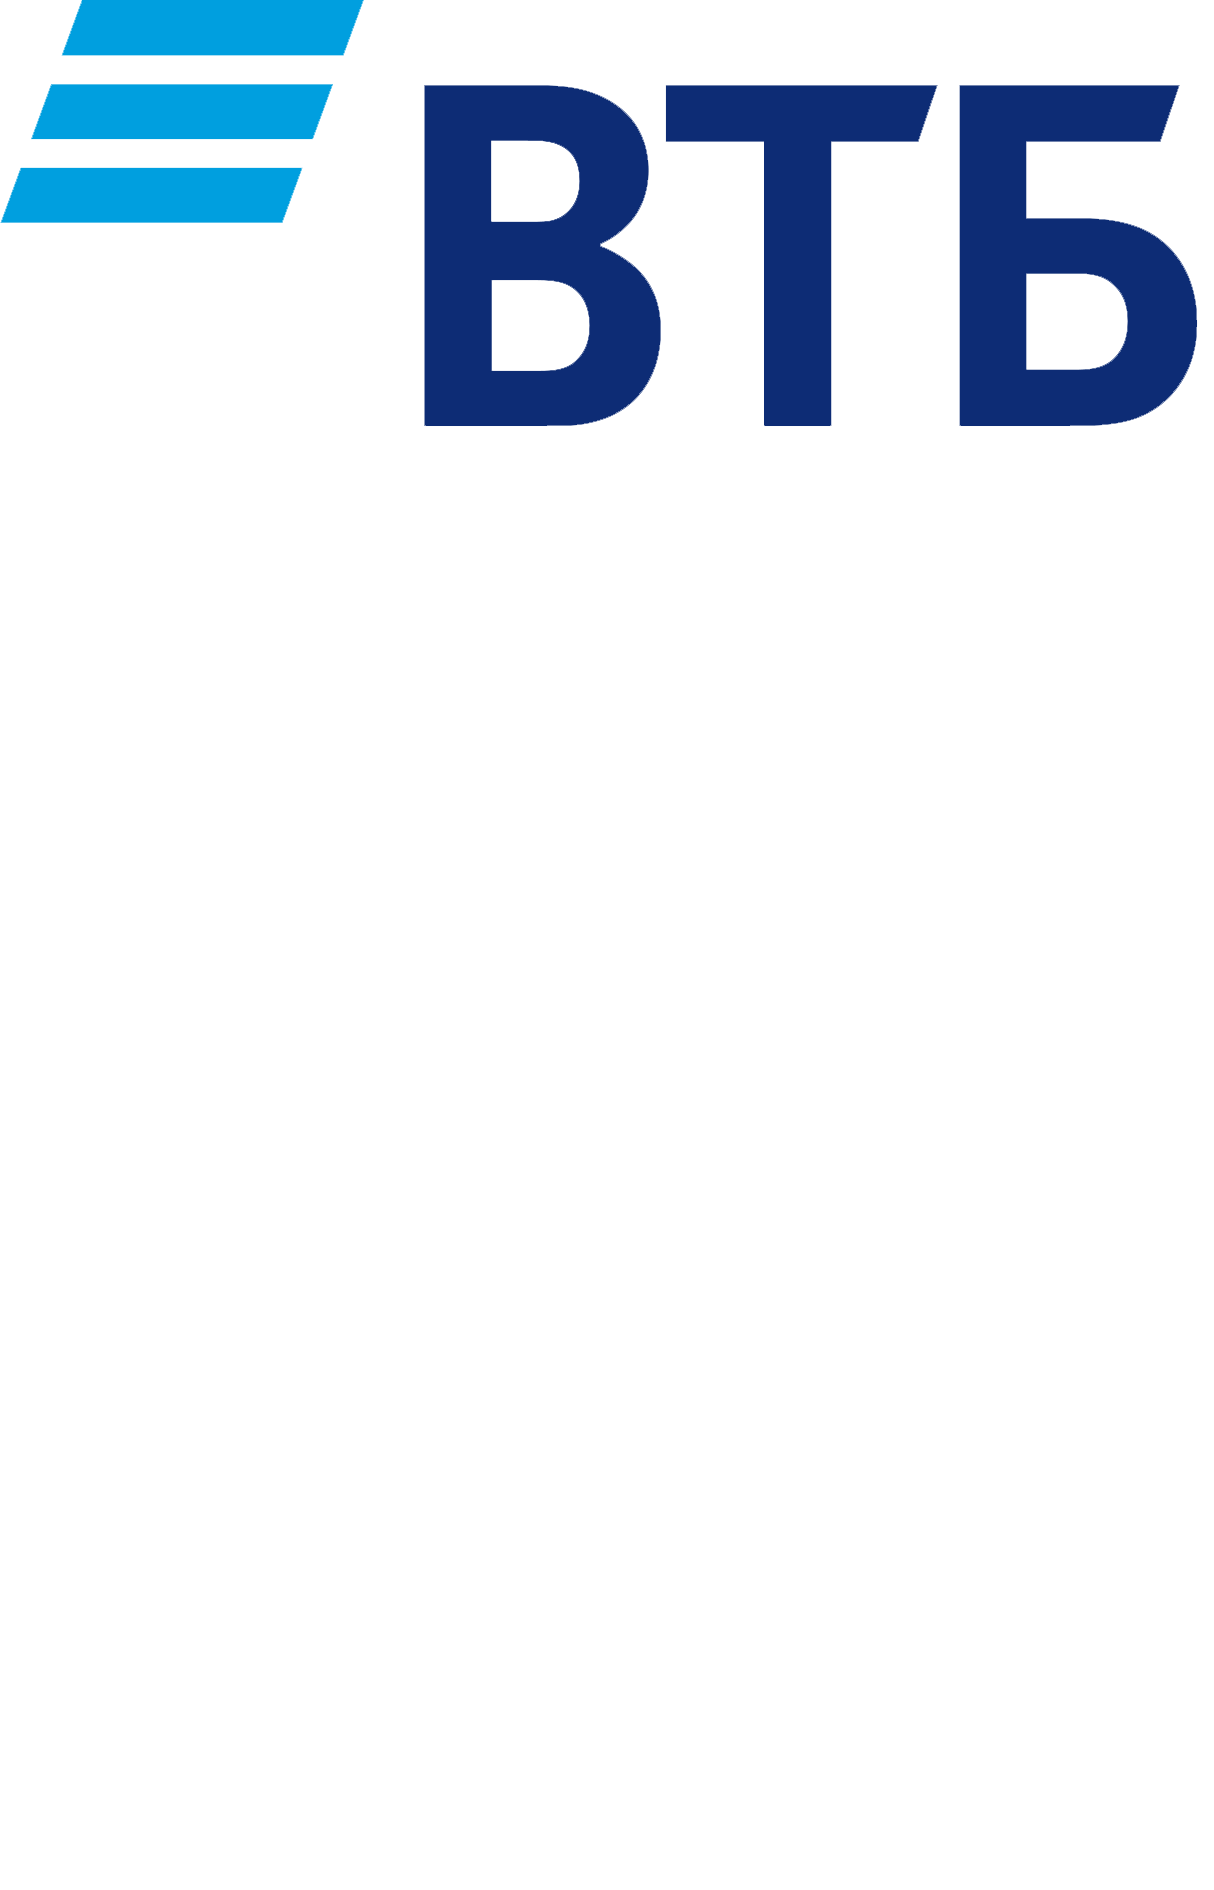 Втб публичное акционерное общество. ВТБ логотип. Банк ВТБ новый логотип. ВТБ на прозрачном фоне. ВТБ на белом фоне.